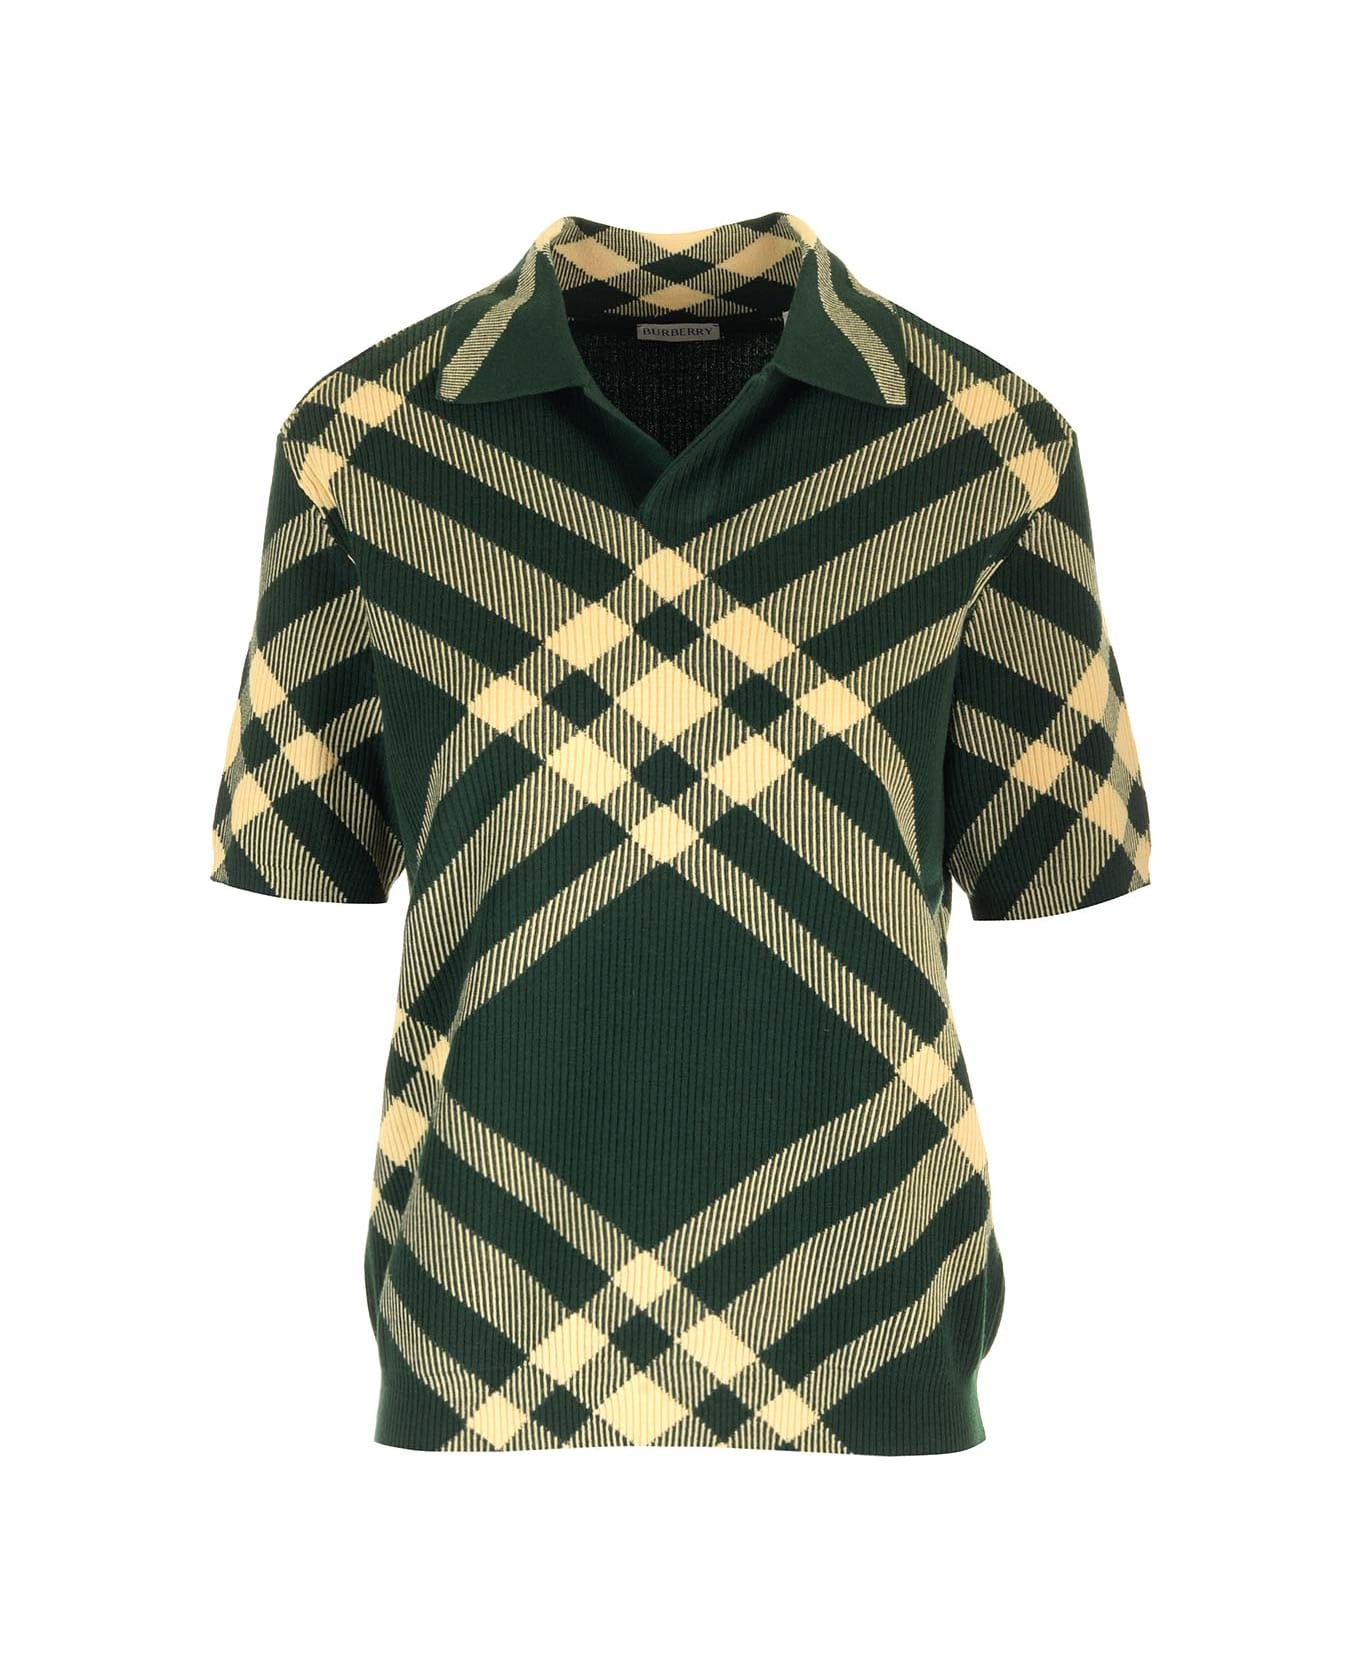 Burberry 'daffoil' Polo Shirt - Verde